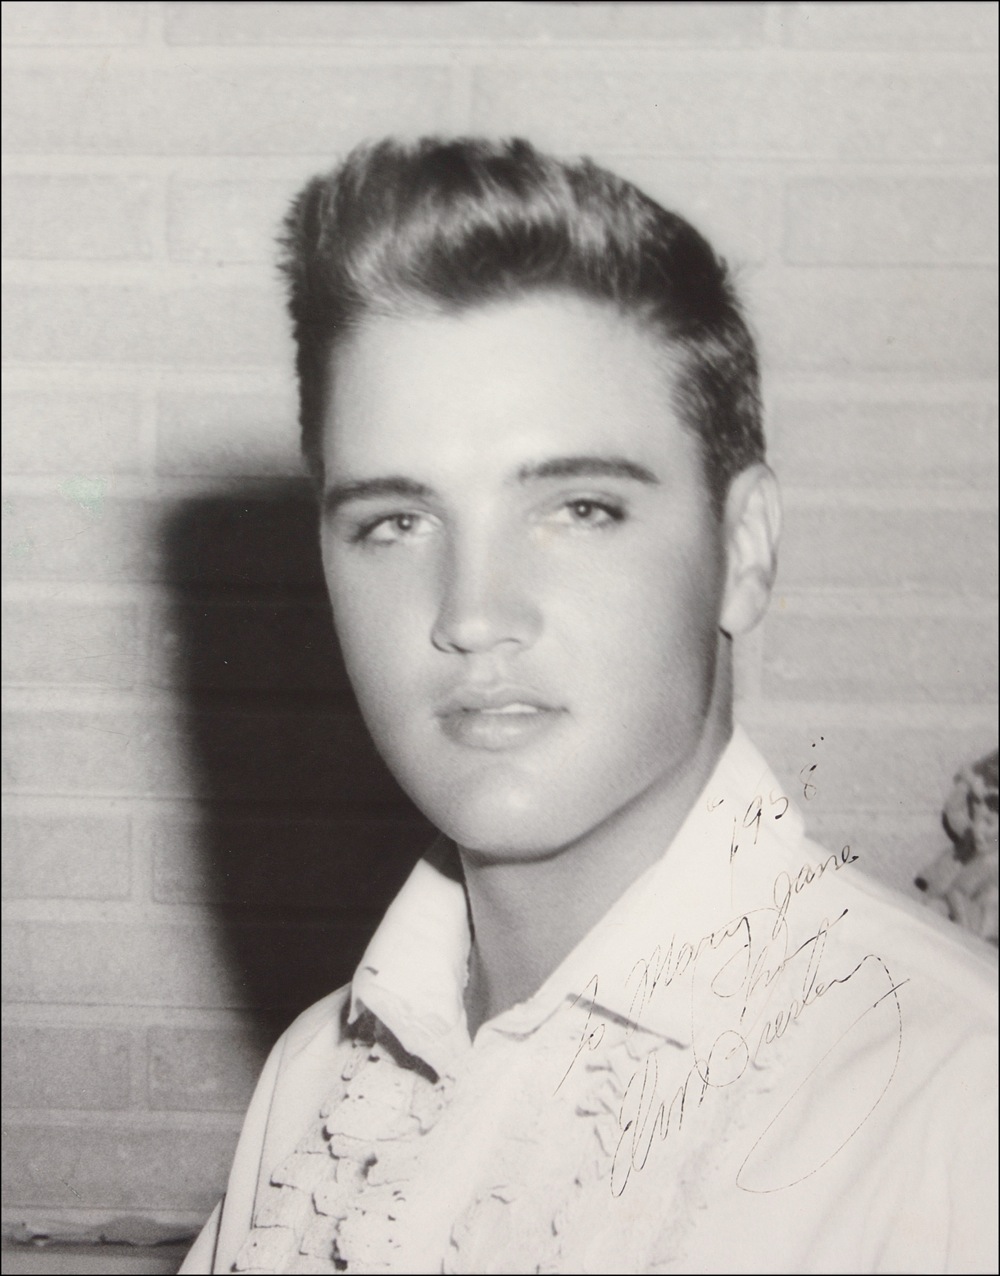 Lot #602 Elvis Presley